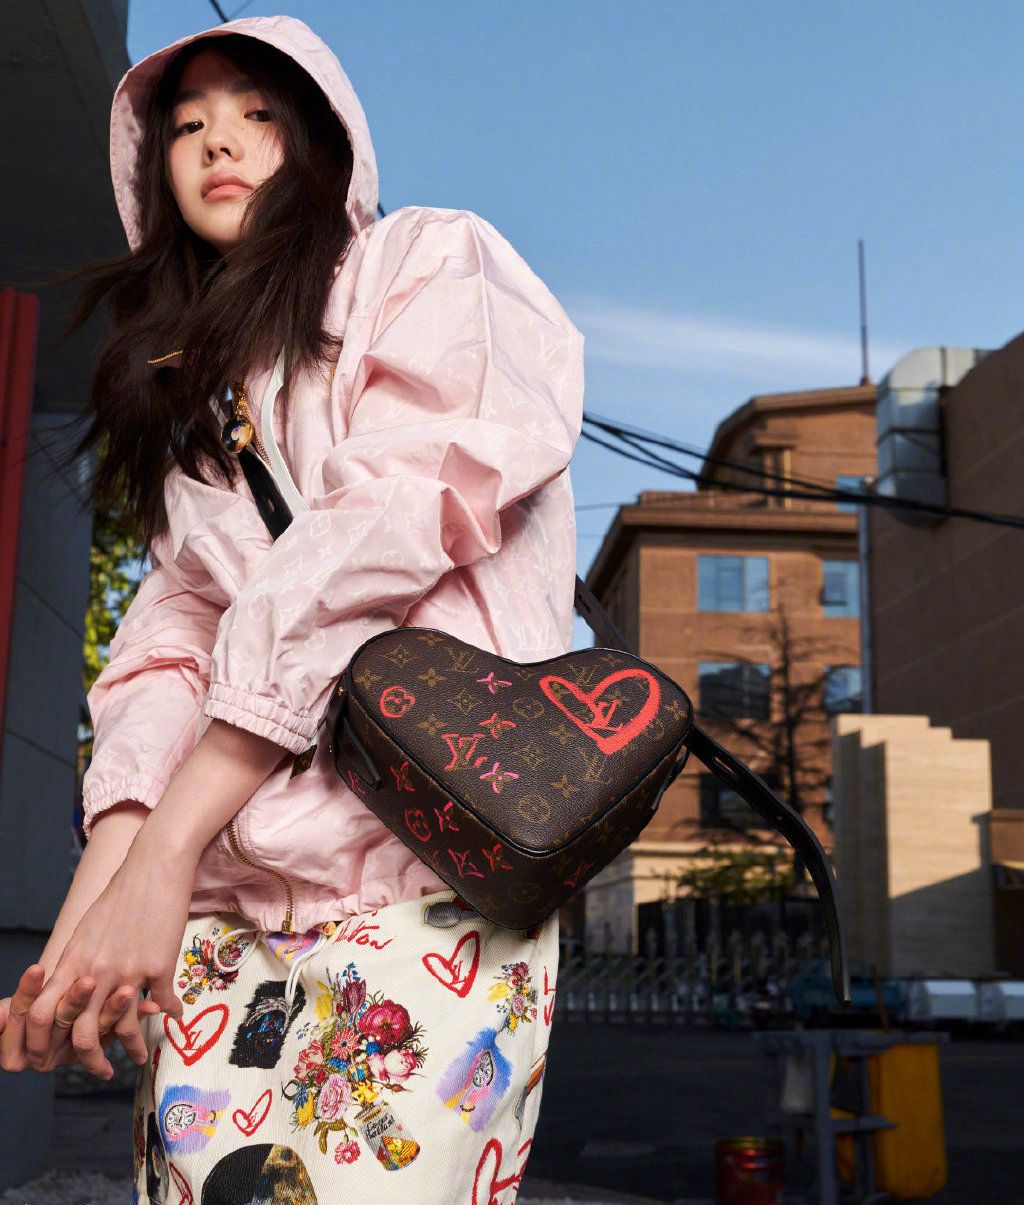 刘浩存酷美嘻哈彩色印花套装穿搭慵懒与帅气街拍图片